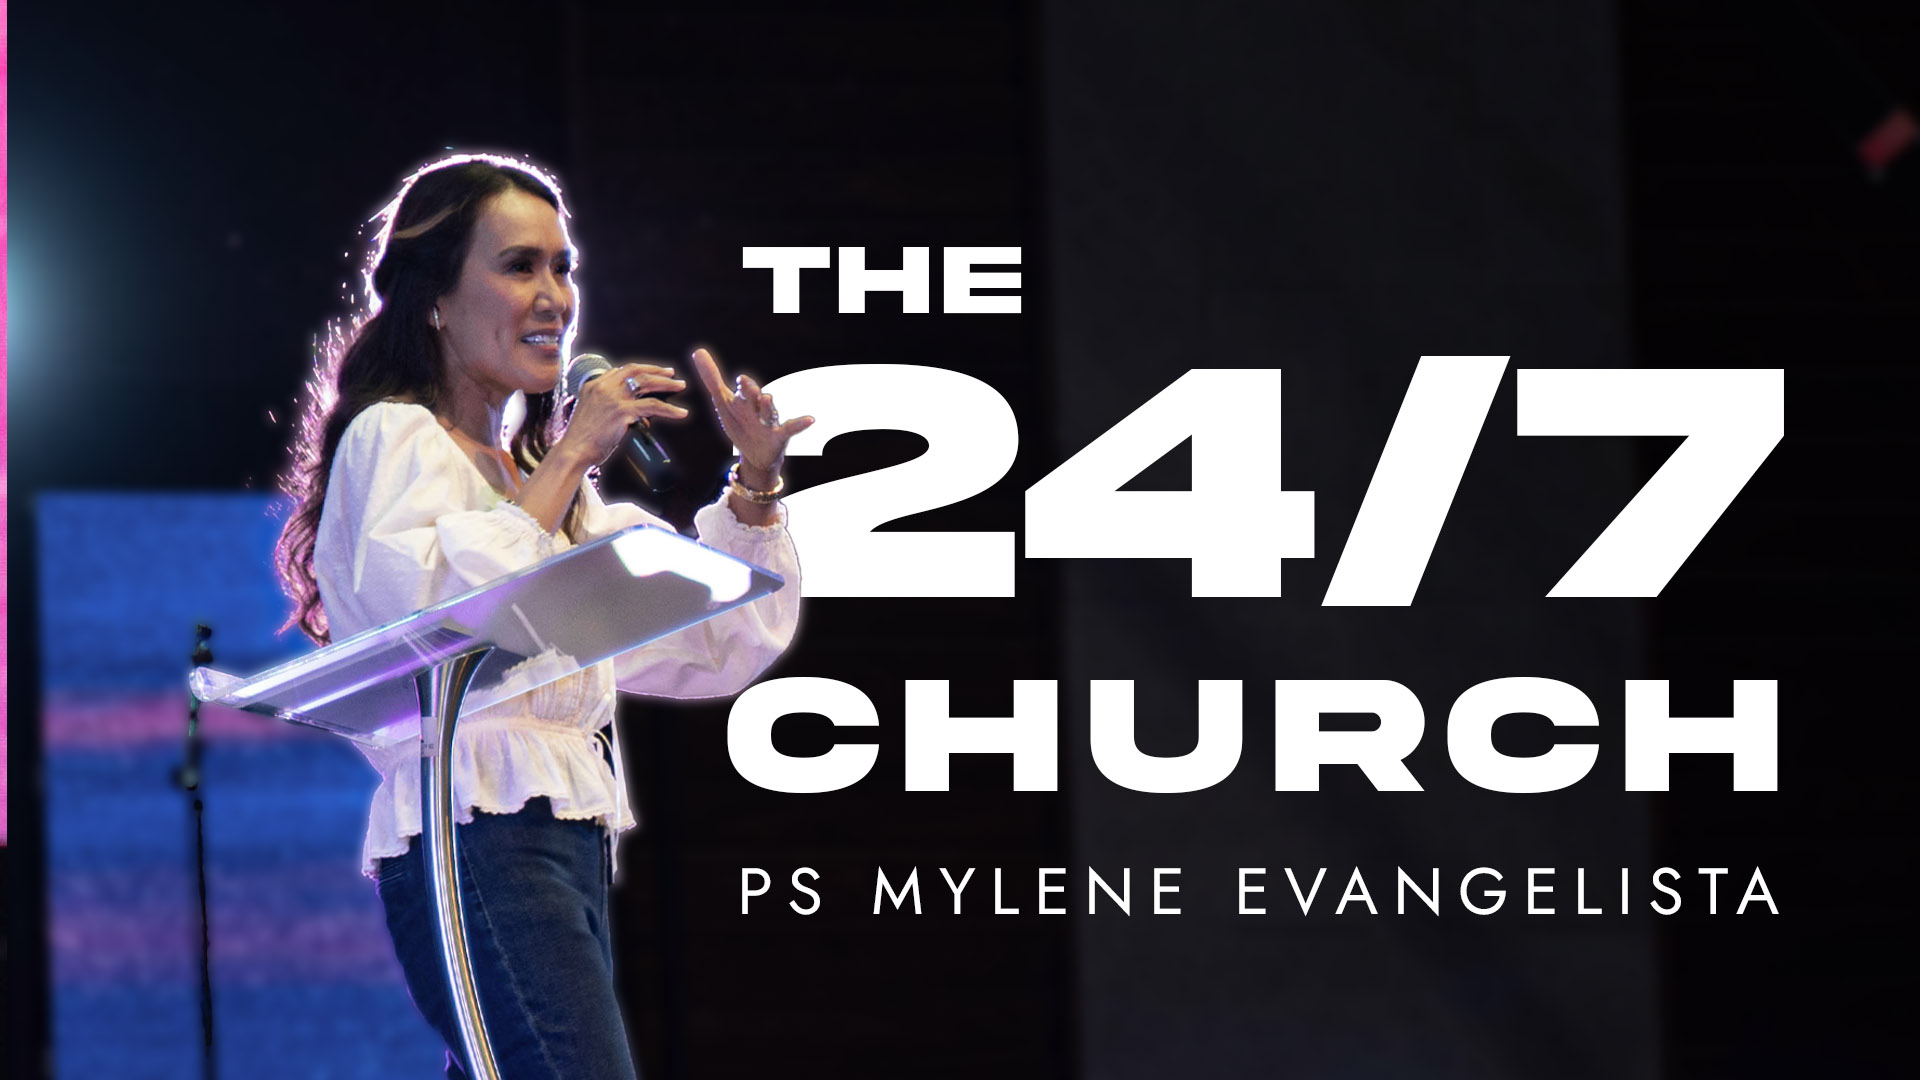 THE 24/7 CHURCH